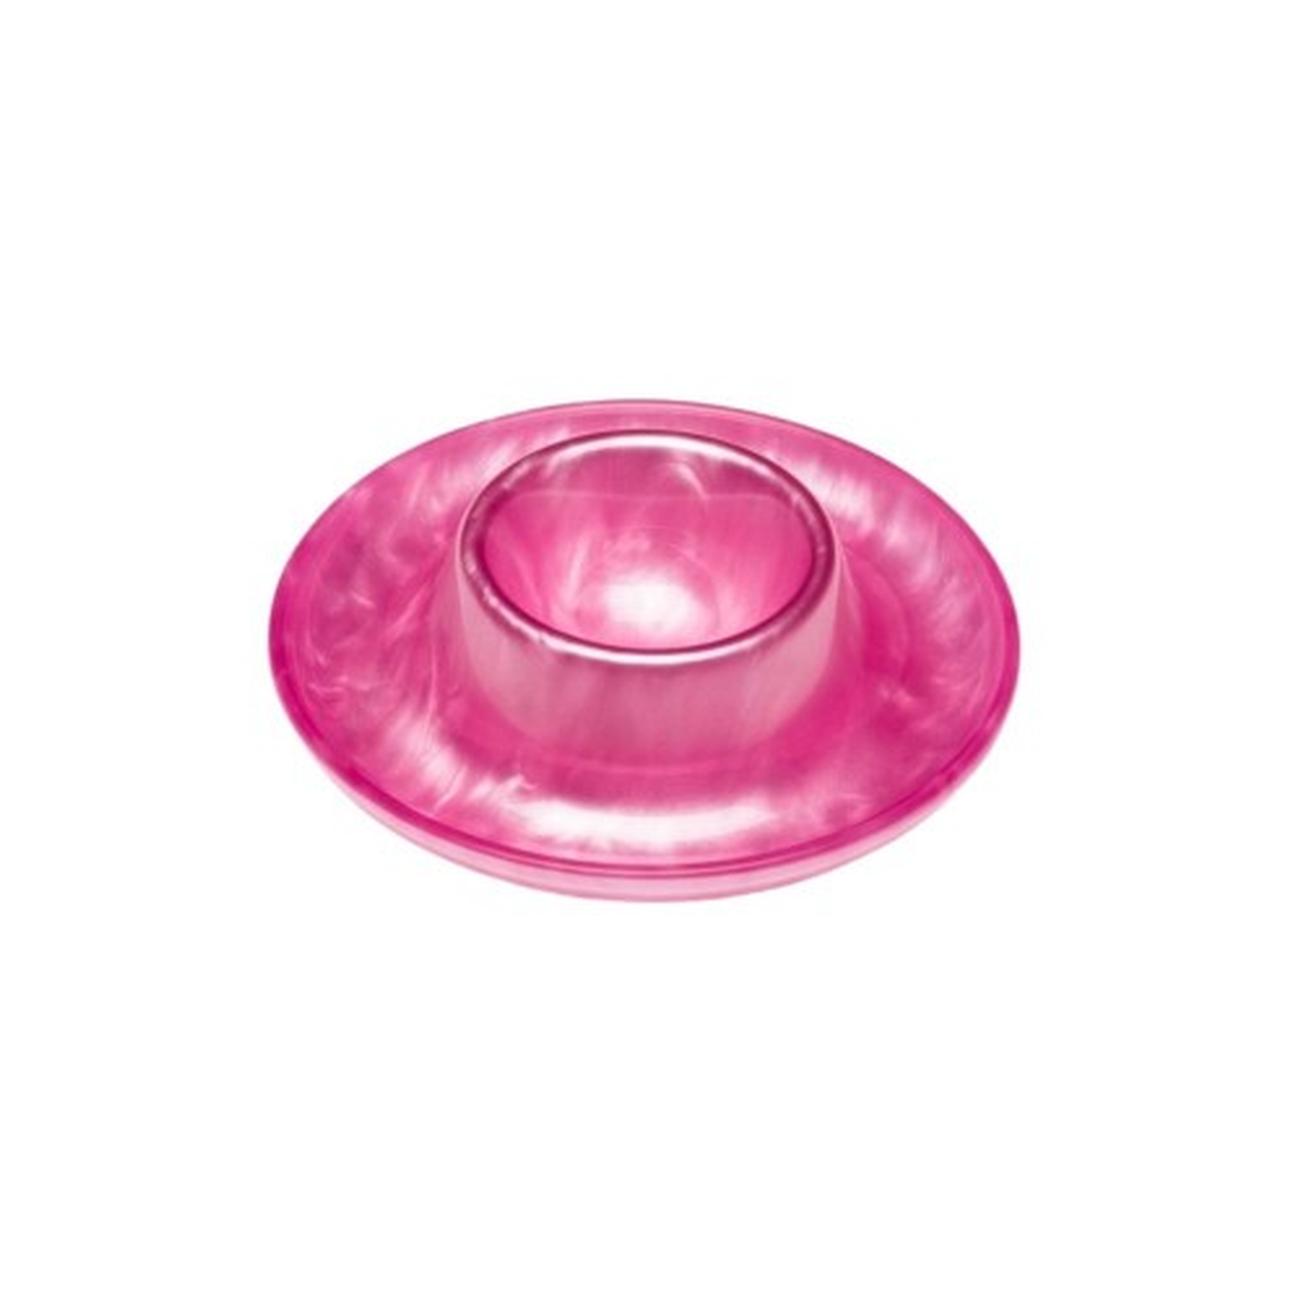 heim-sohne-egg-cup-pink - Heim Sohne Egg Cup-Pink